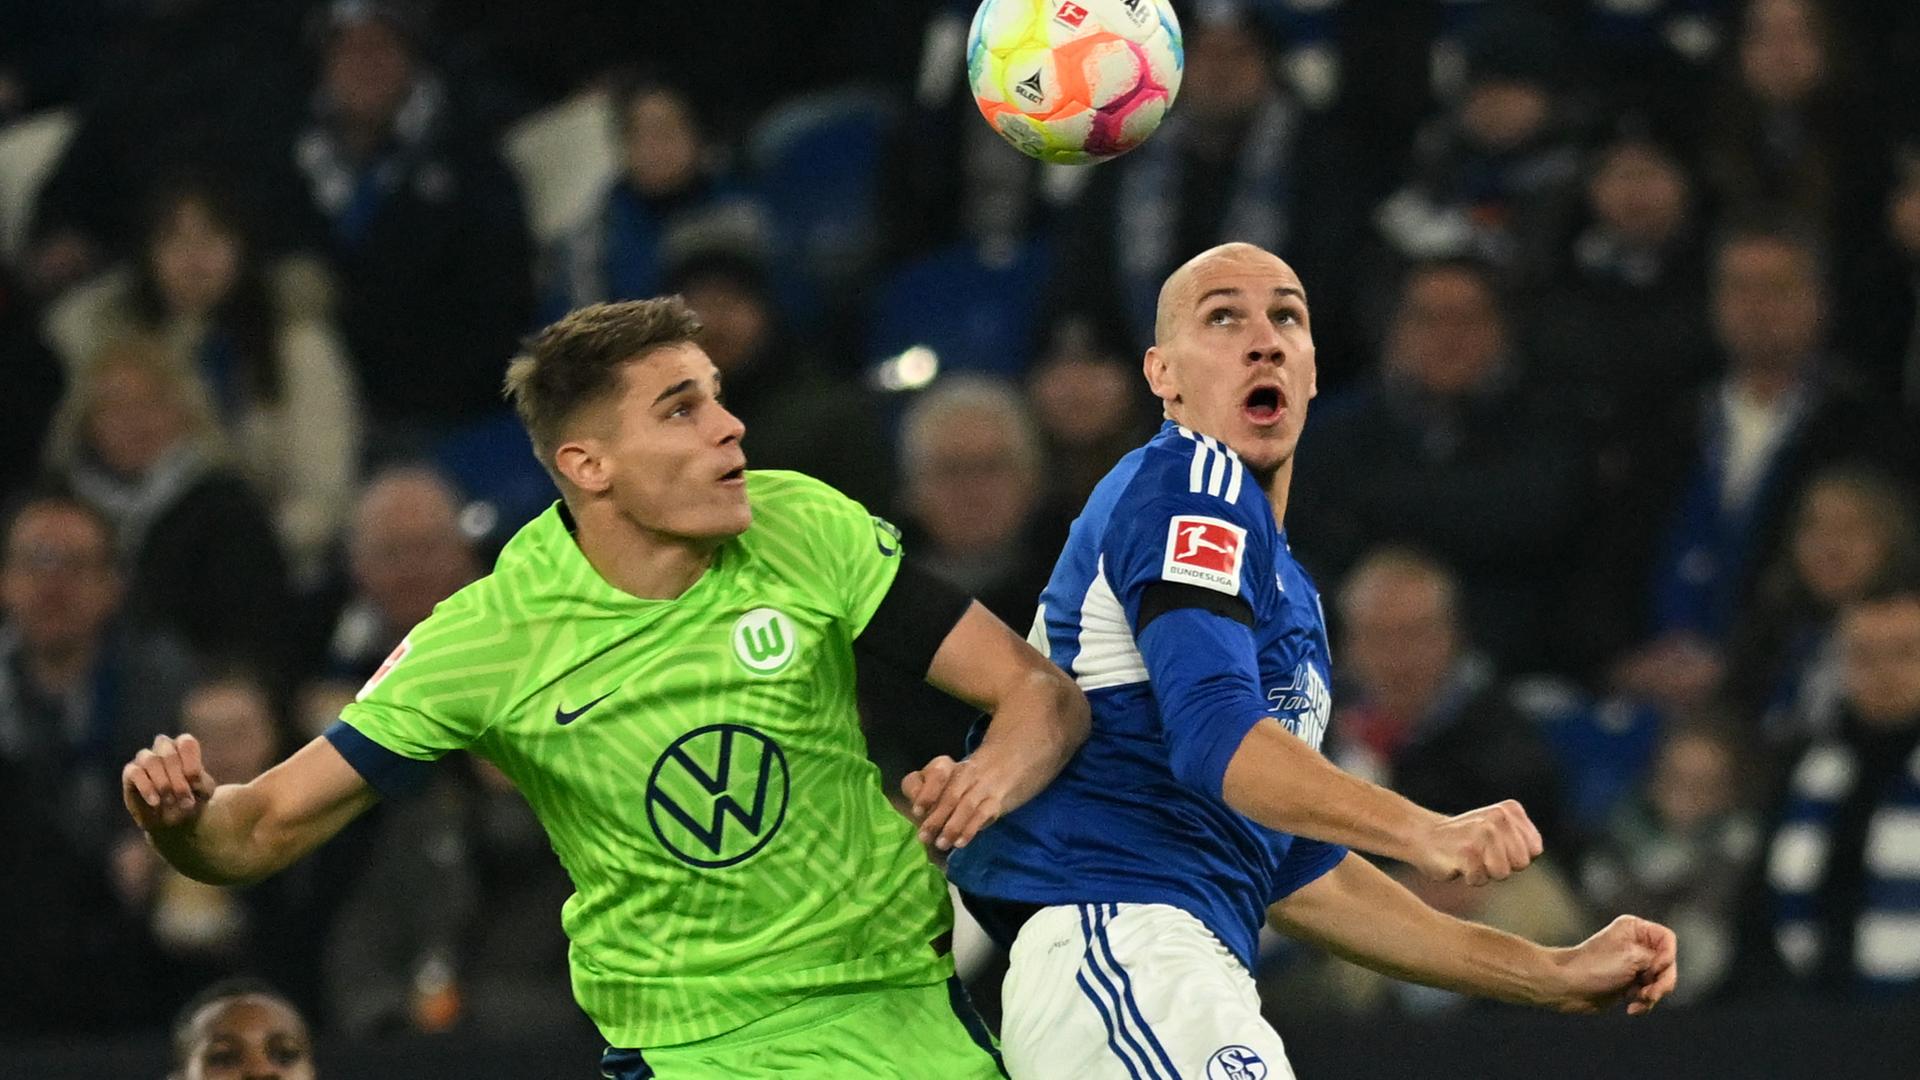 Fußball-Bundesliga, FC Schalke 04 - VfL Wolfsburg: Schalkes Michael Frey (r.) und Wolfsburgs Micky van de Ven kämpfen um den Ball.